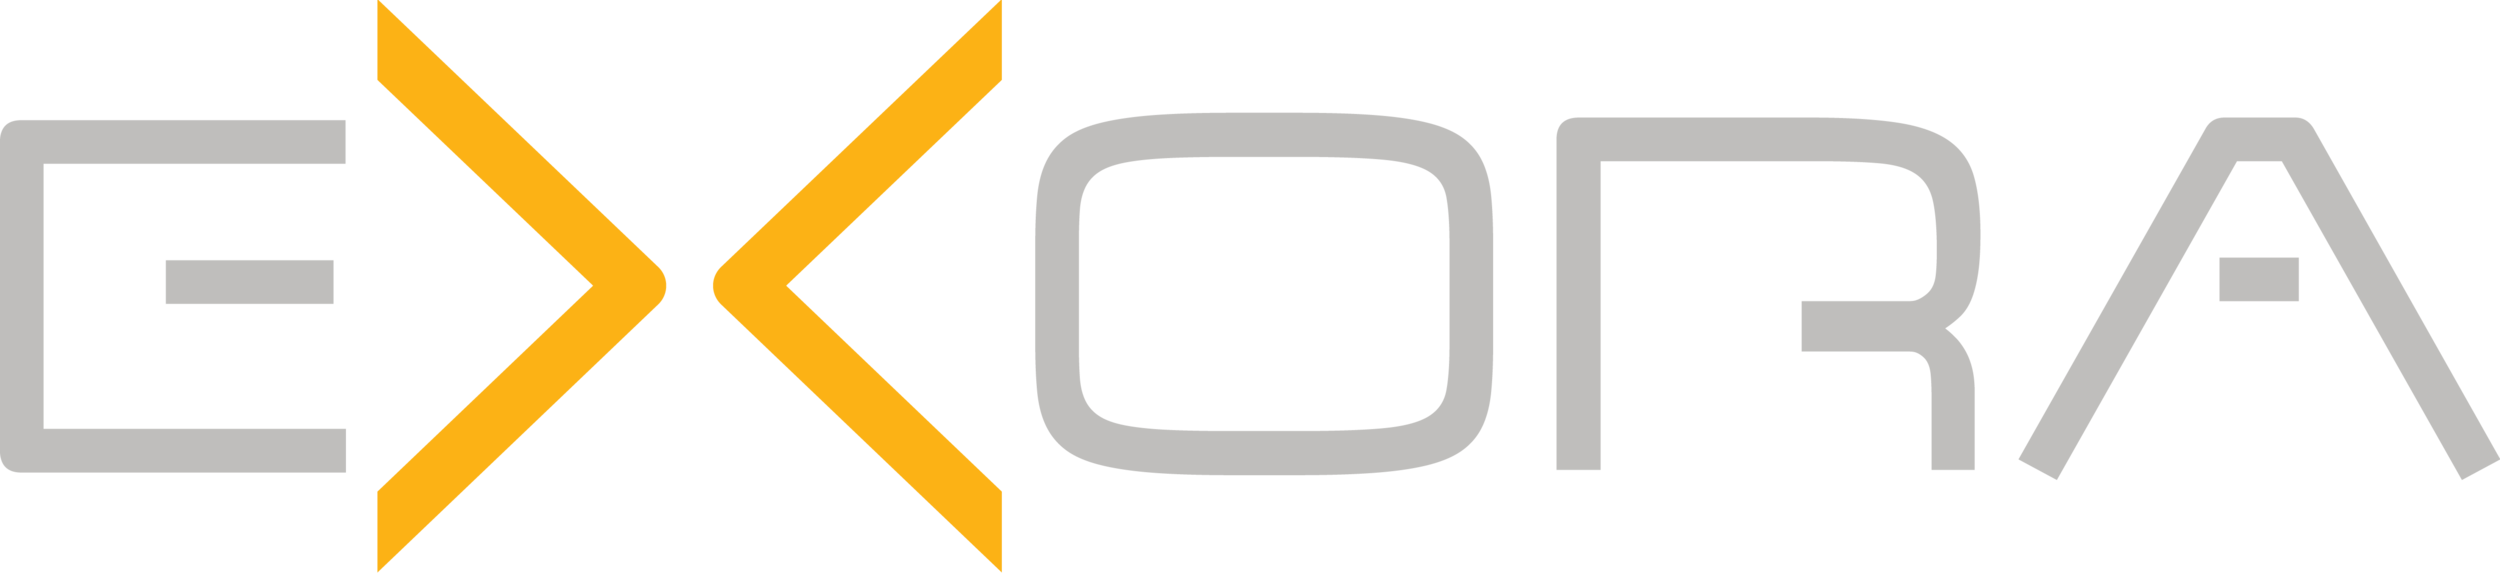 Exora Logo-01.png